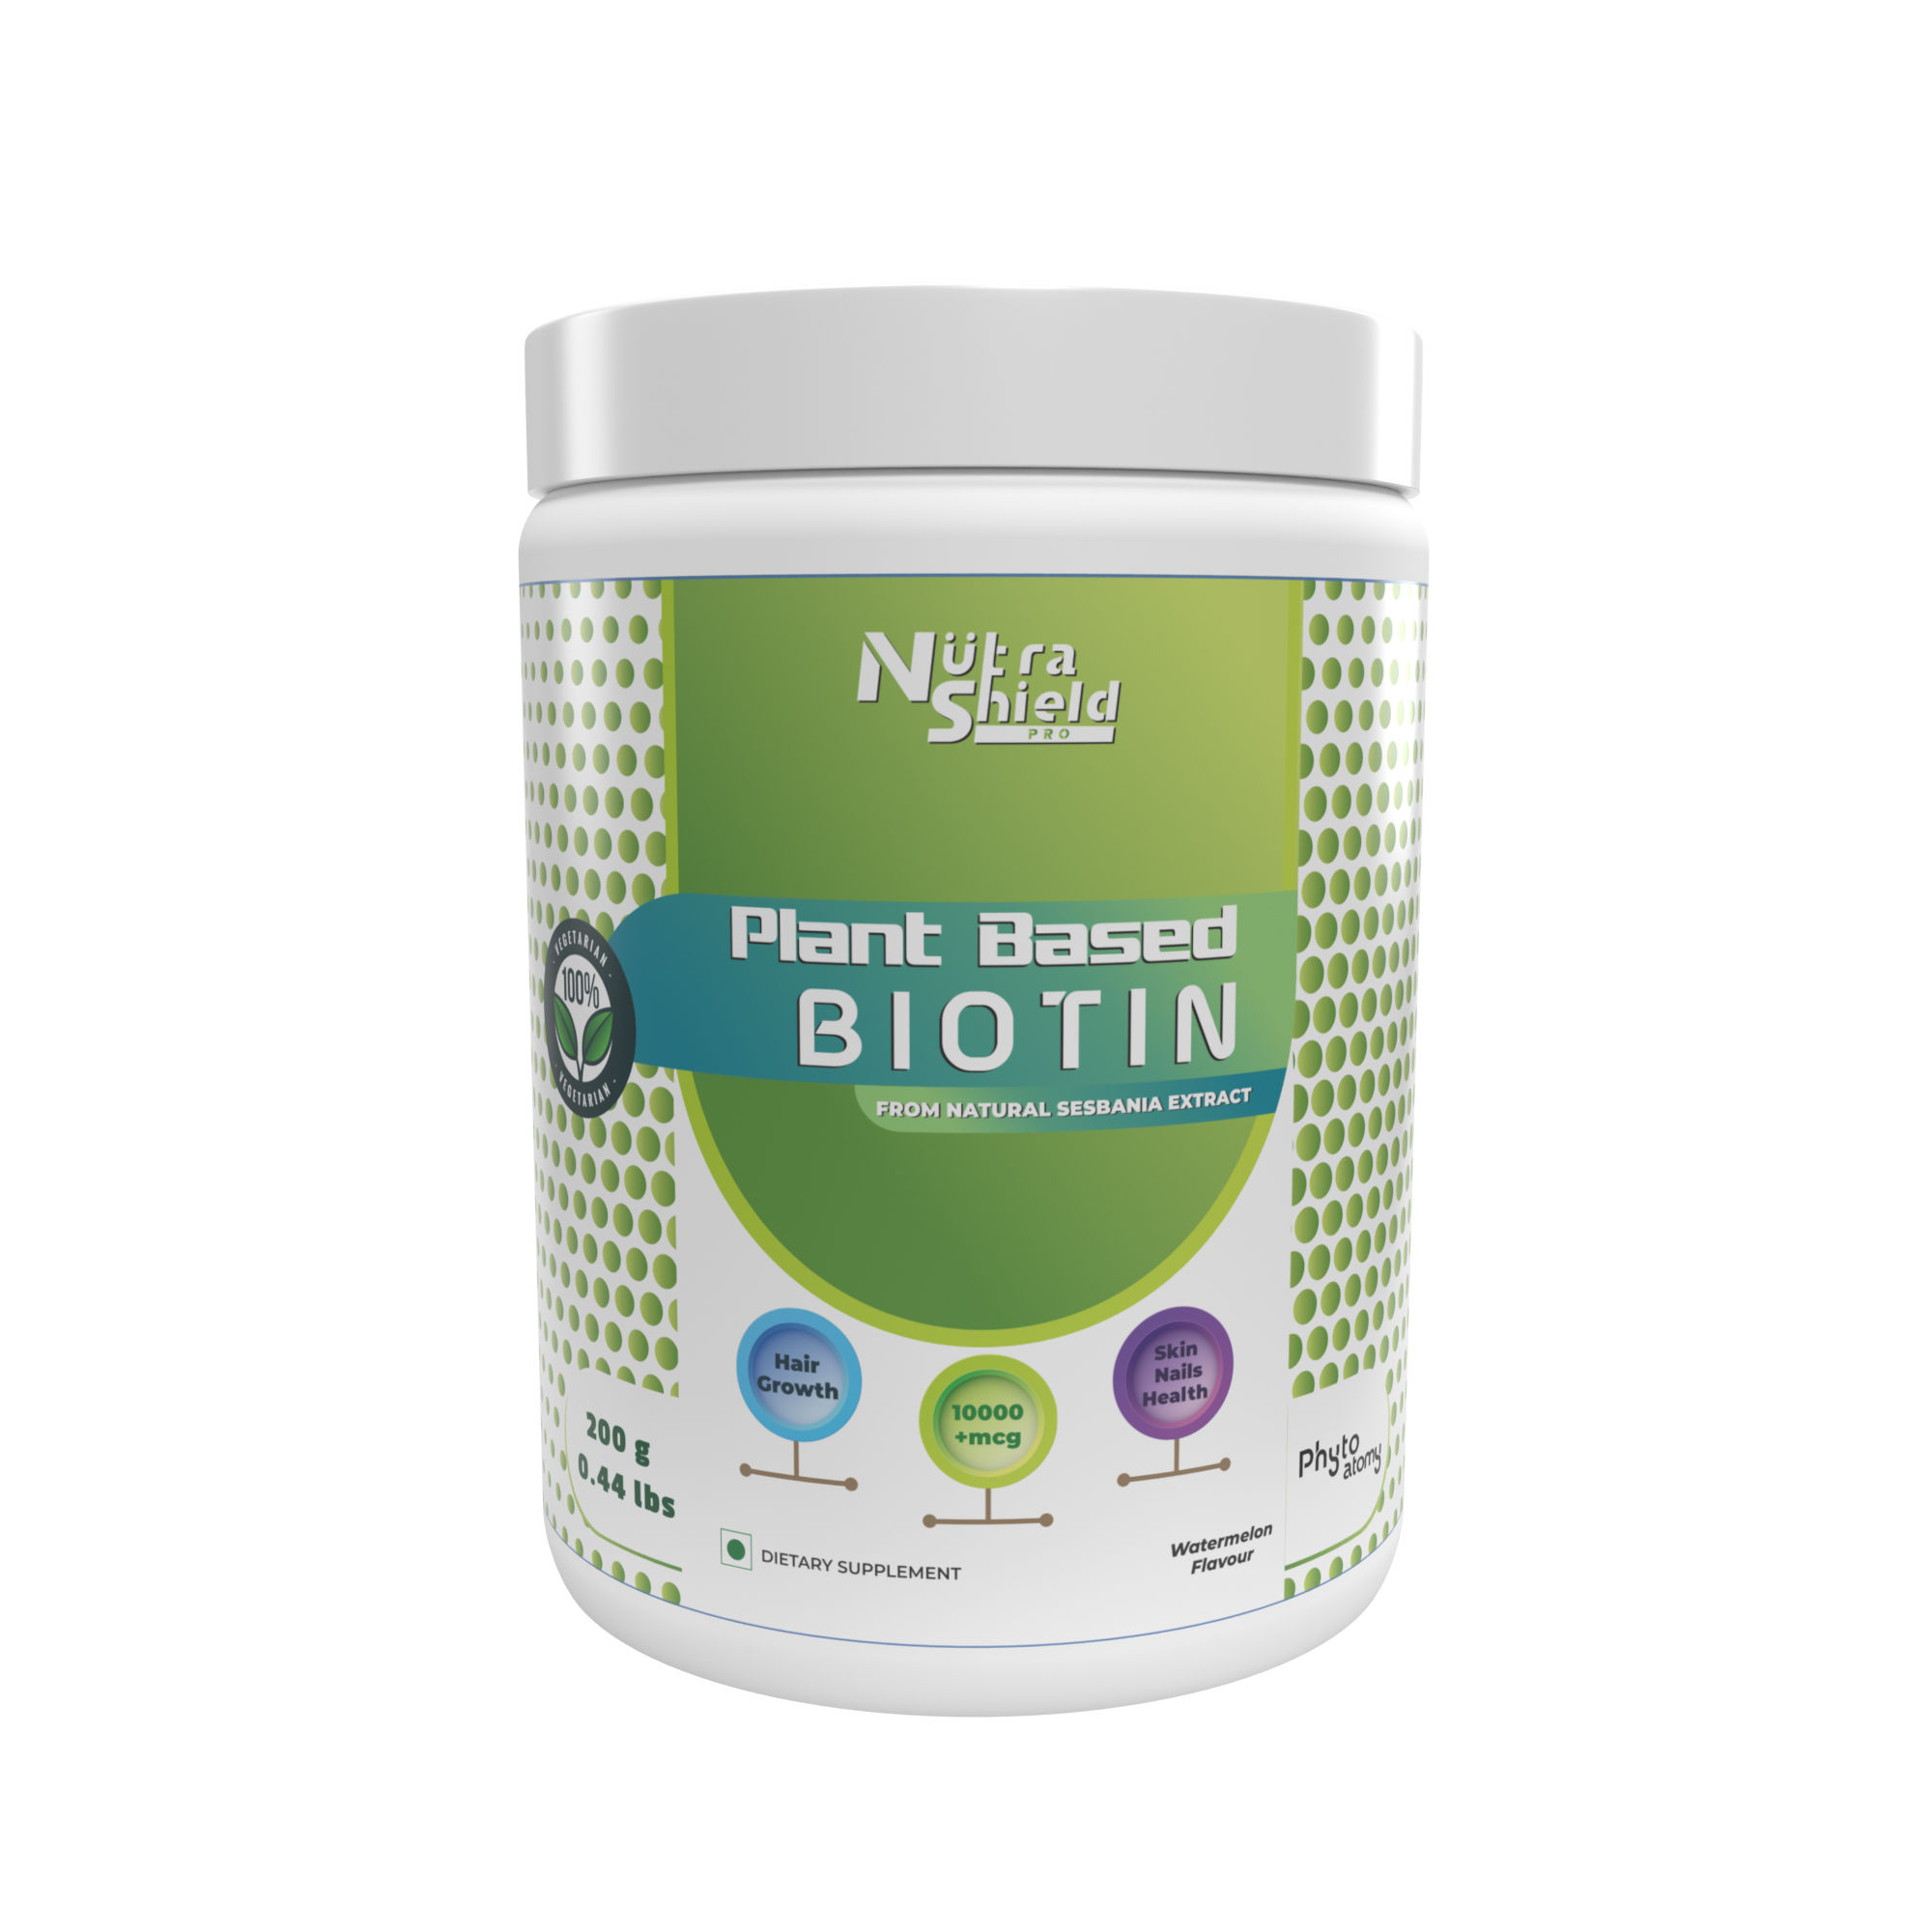 Biotin (200g)